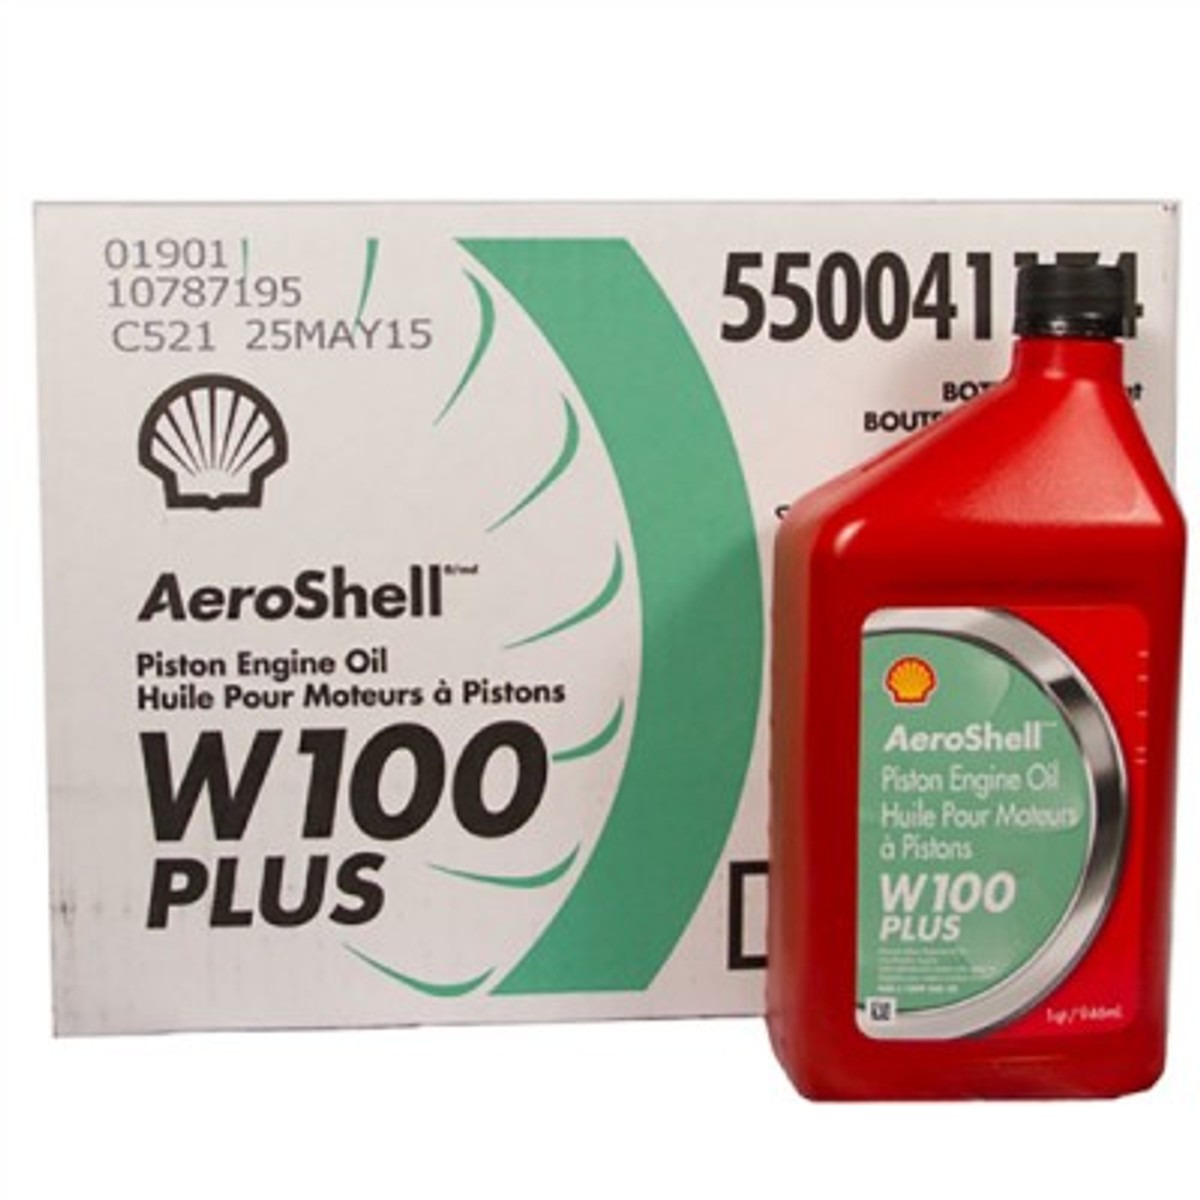 Aeroshell W100 PLUS Oil.   Case (6 quarts)